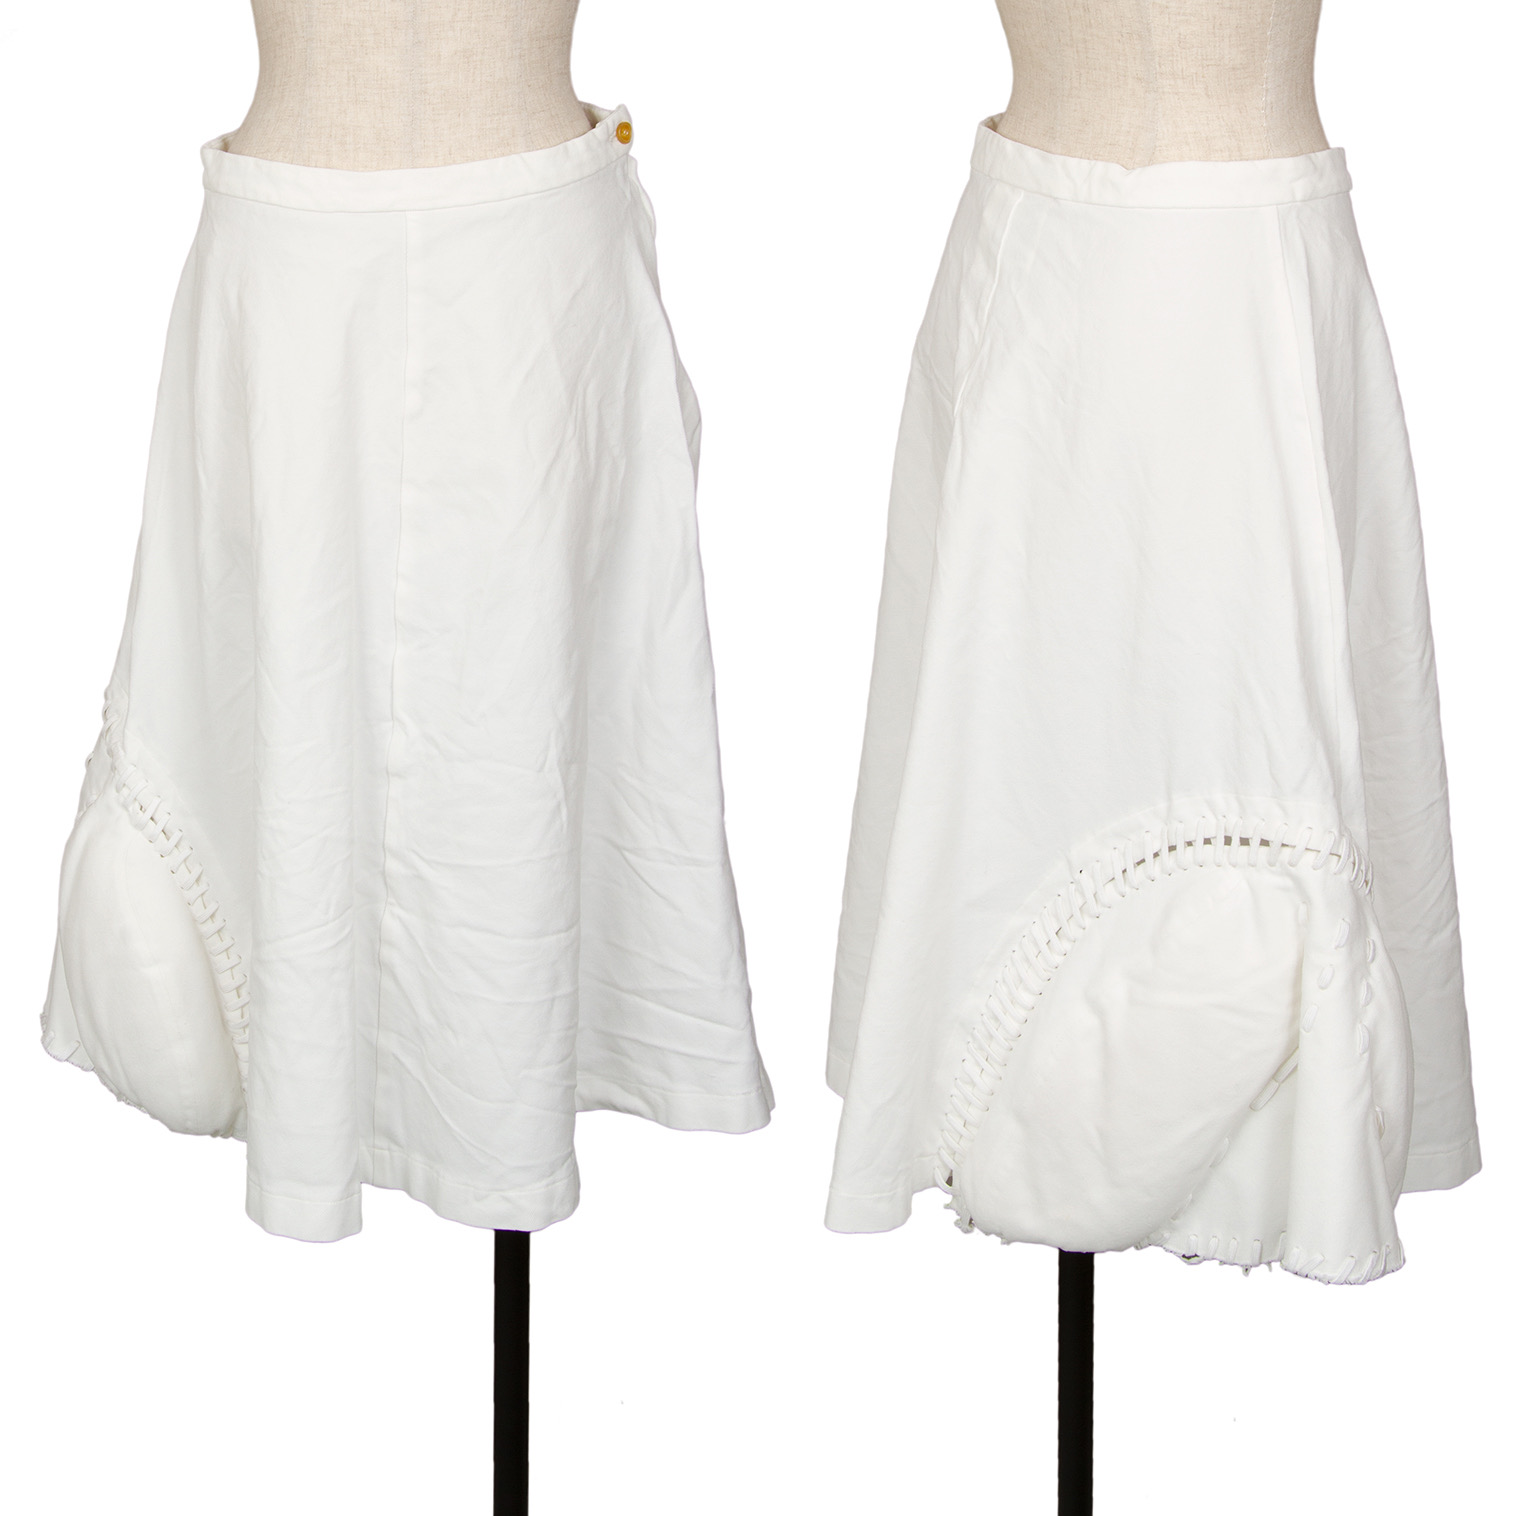 再出品しなおしました【新品 美品】COMME des GARCONS 白スカート